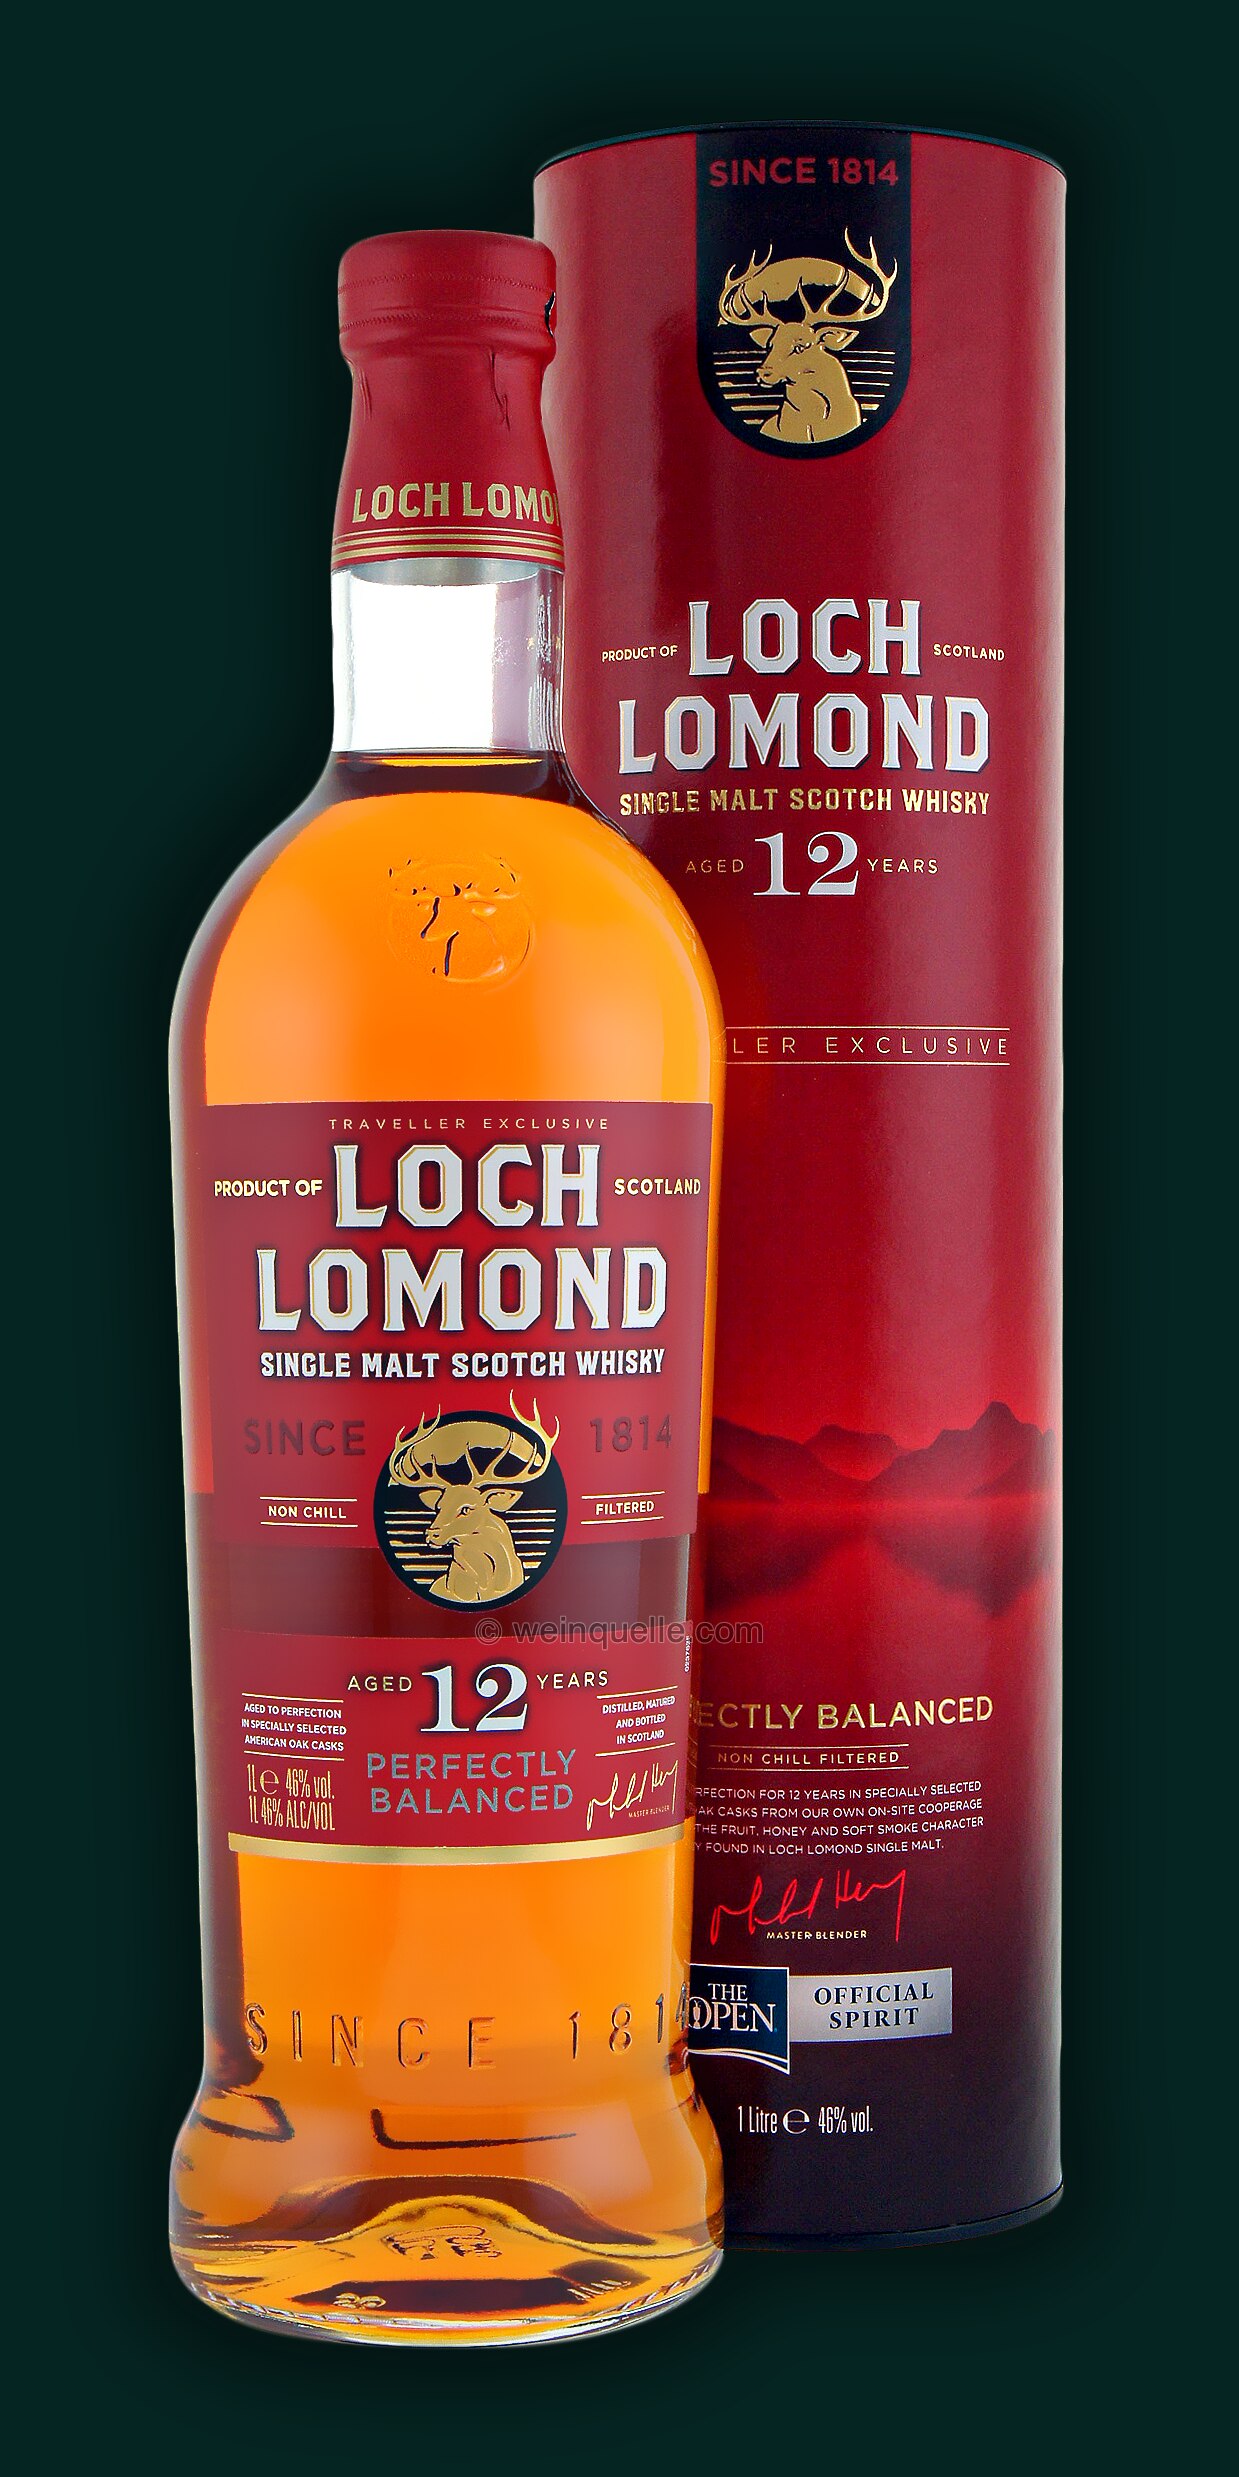 Lühmann 12 1,0 49,50 46% € Malt Loch Weinquelle Lomond - Years Single Liter,